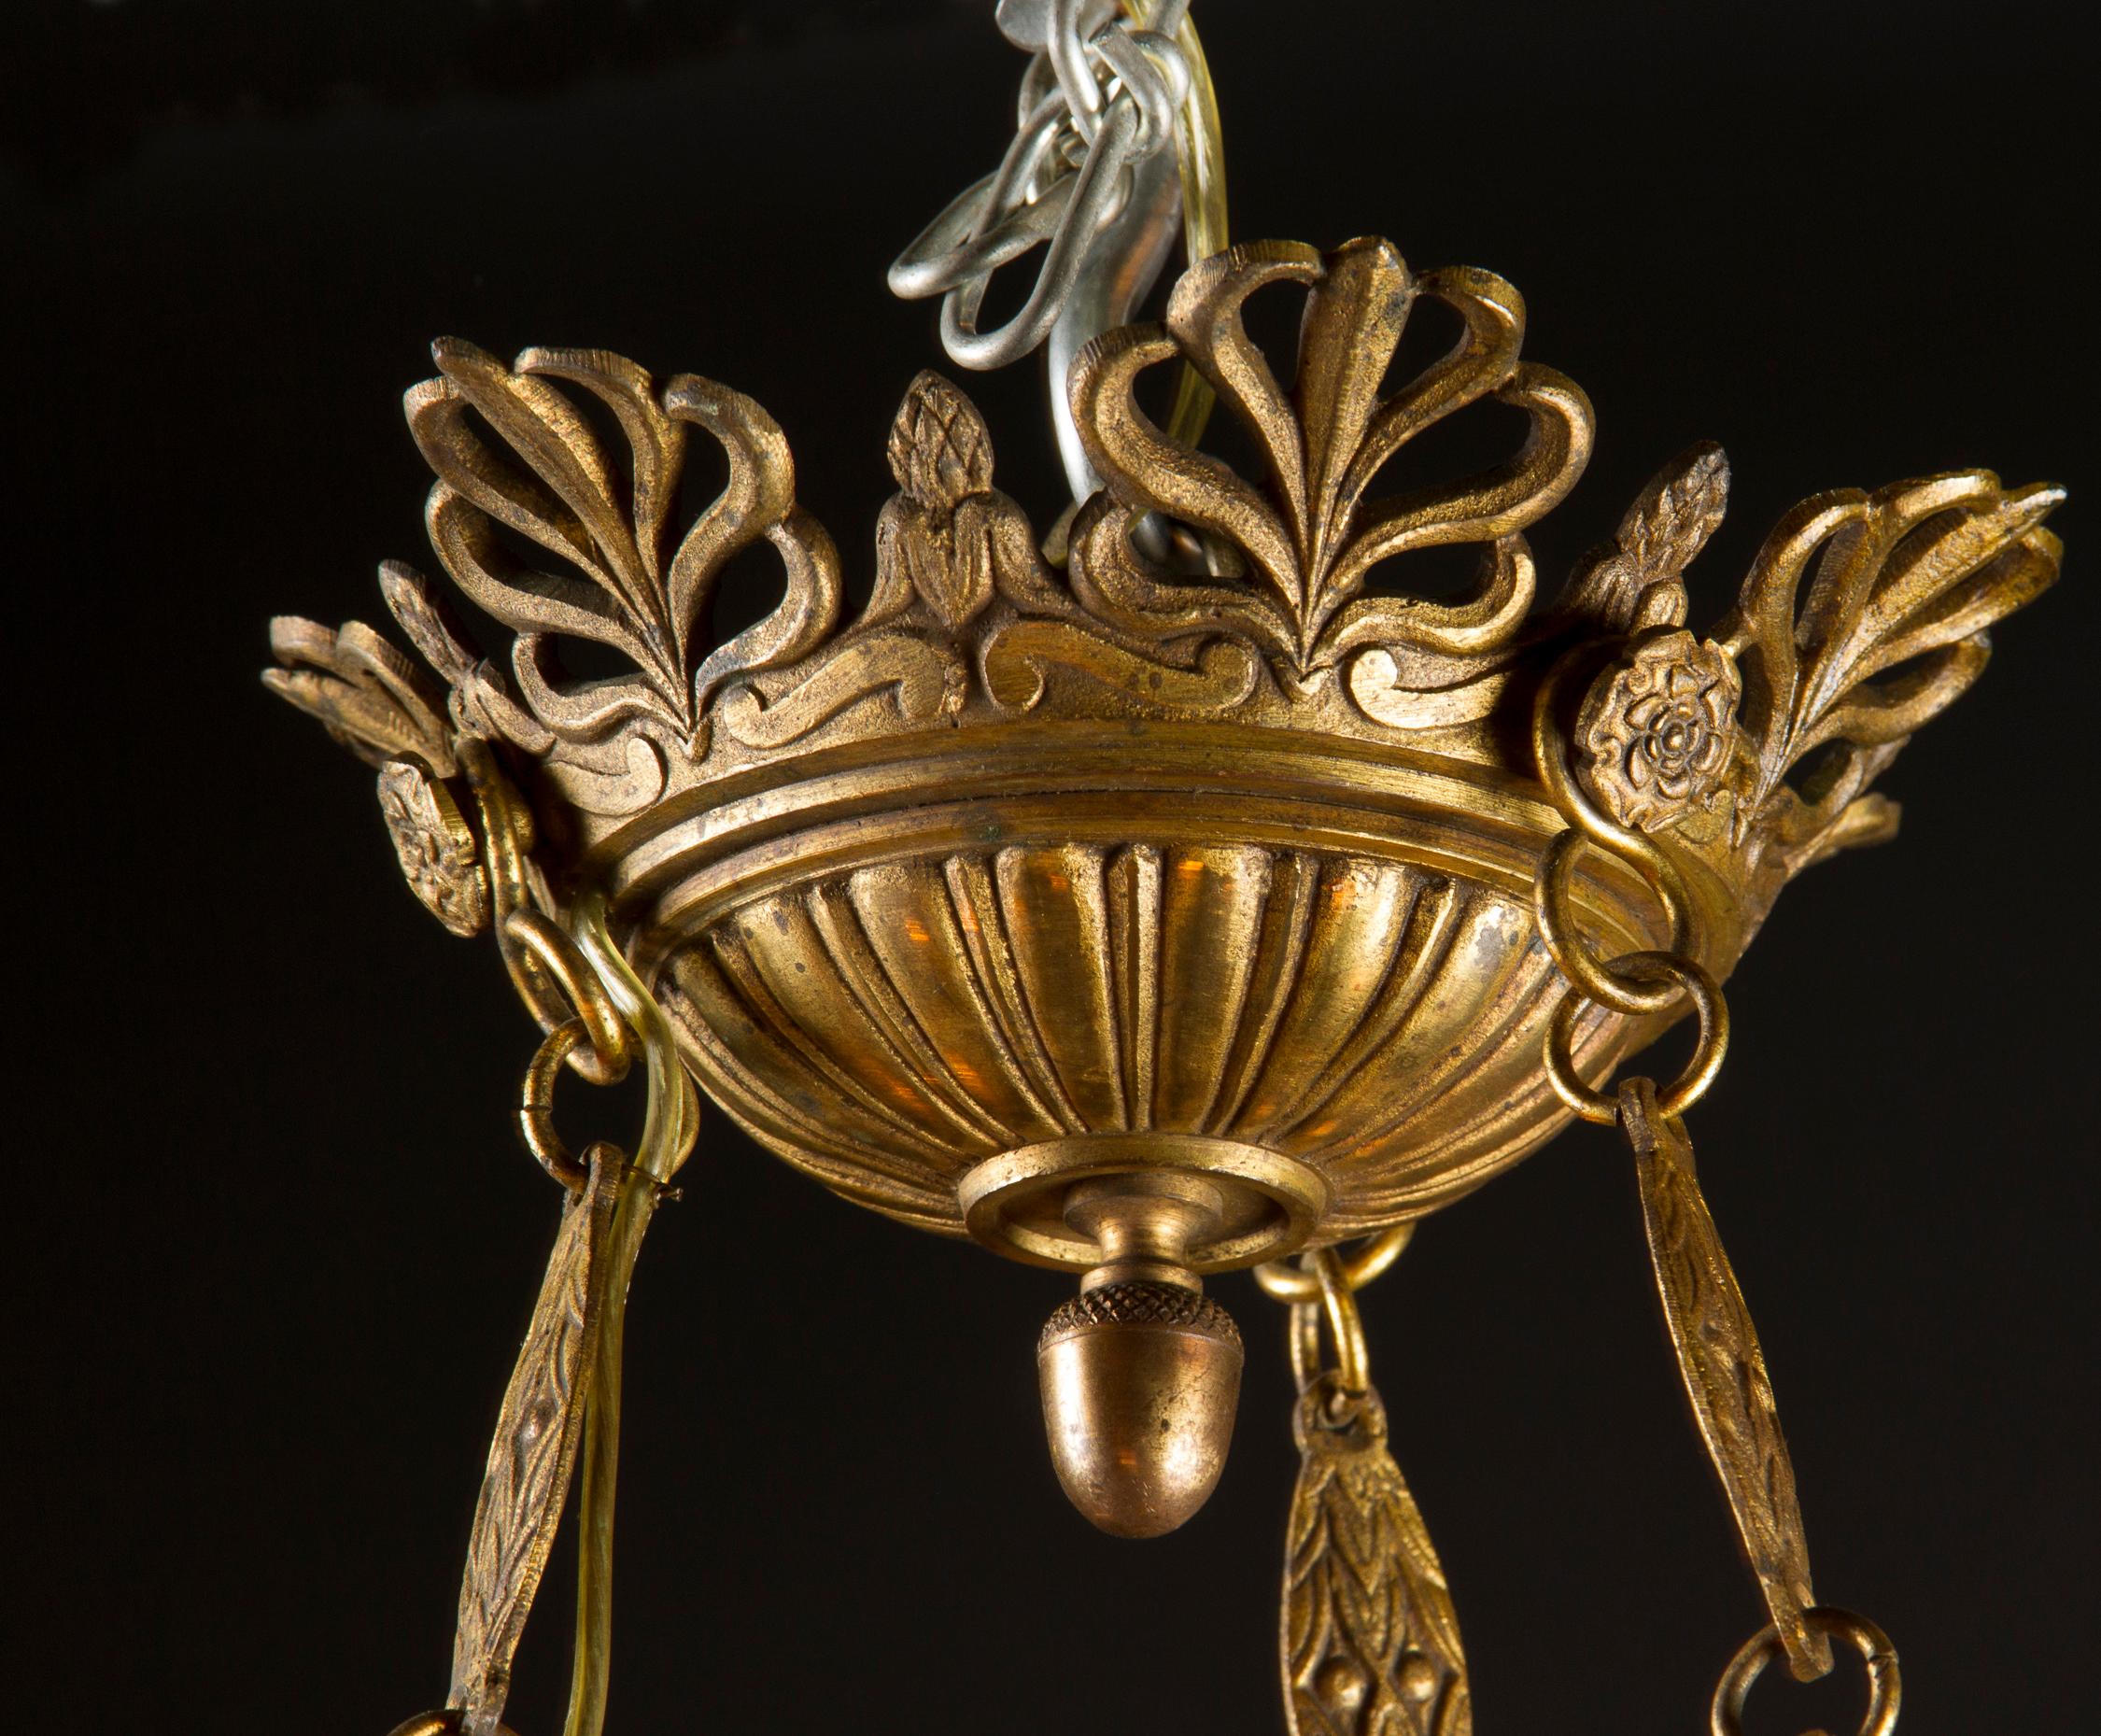 Dieser wunderschöne Empire-Kronleuchter zeichnet sich durch seine verschnörkelte Bronze aus, die sich kontrastreich von einem dunklen Grün abhebt. Das Stück stammt aus dem 19. Jahrhundert, und sein 6-flammiger Sockel hängt an drei Strängen einer